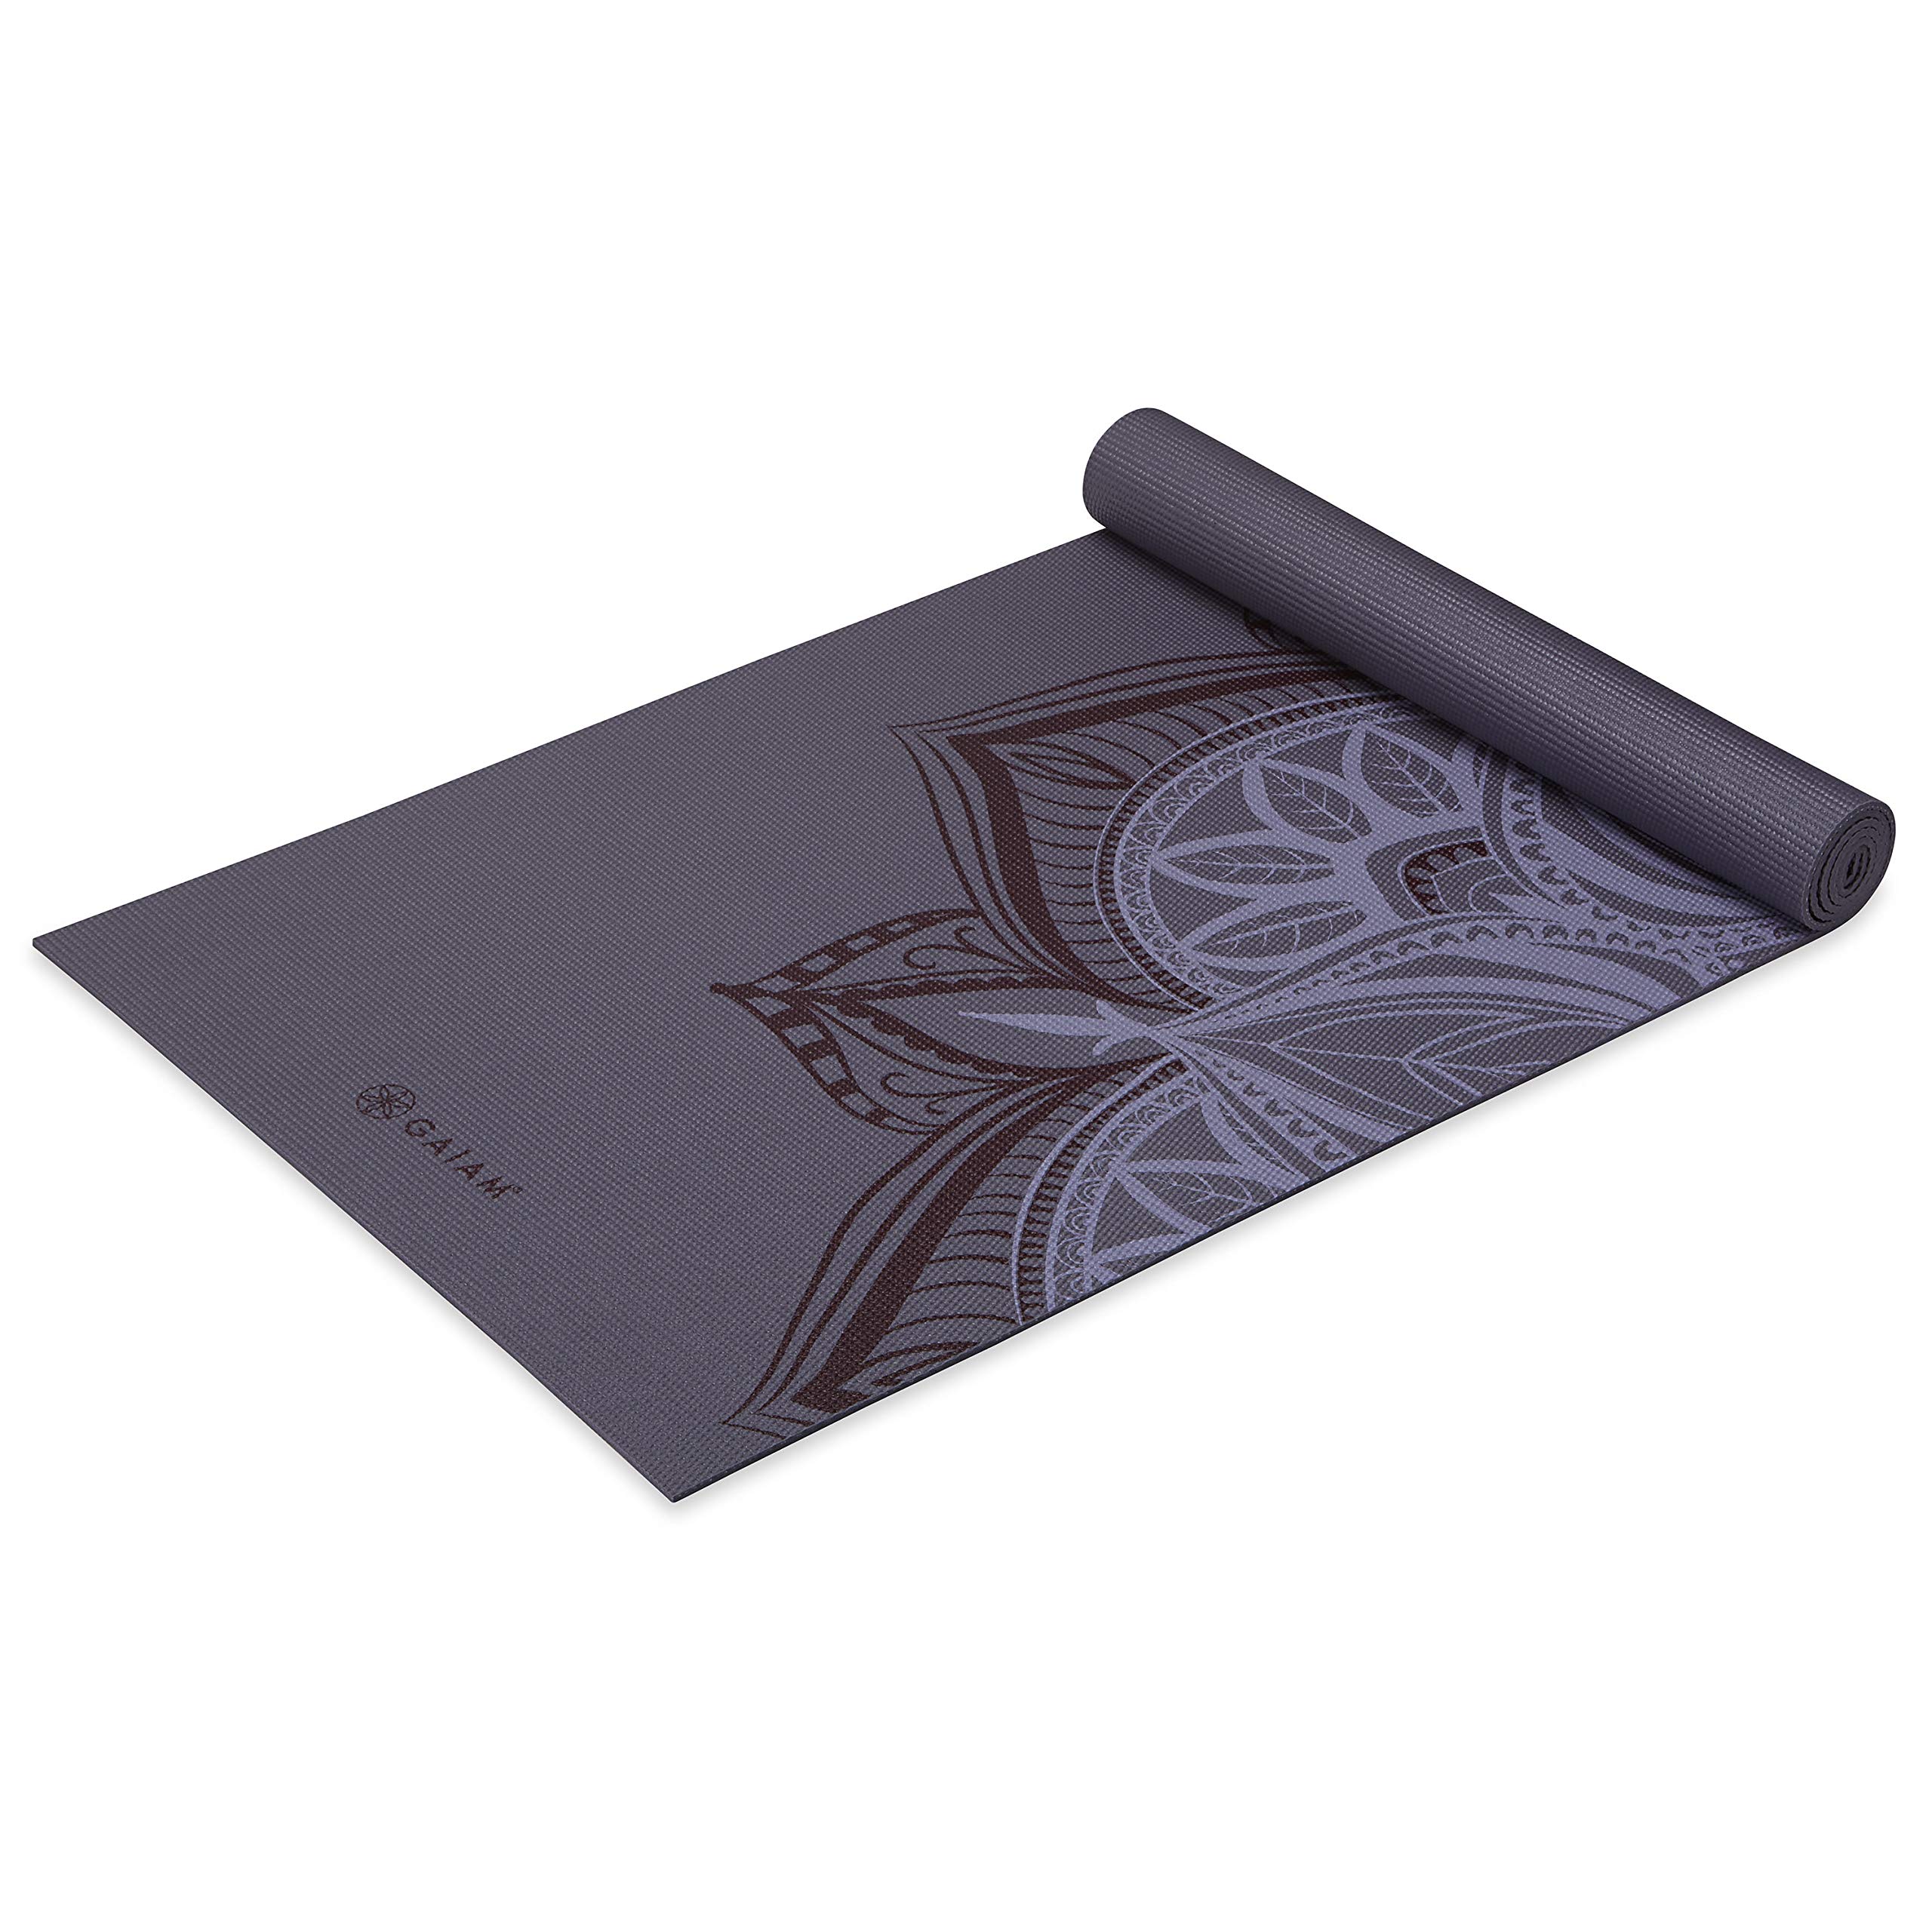 Gaiam Yoga Mat Premium Print Non Slip Exercise & Fitness Mat for